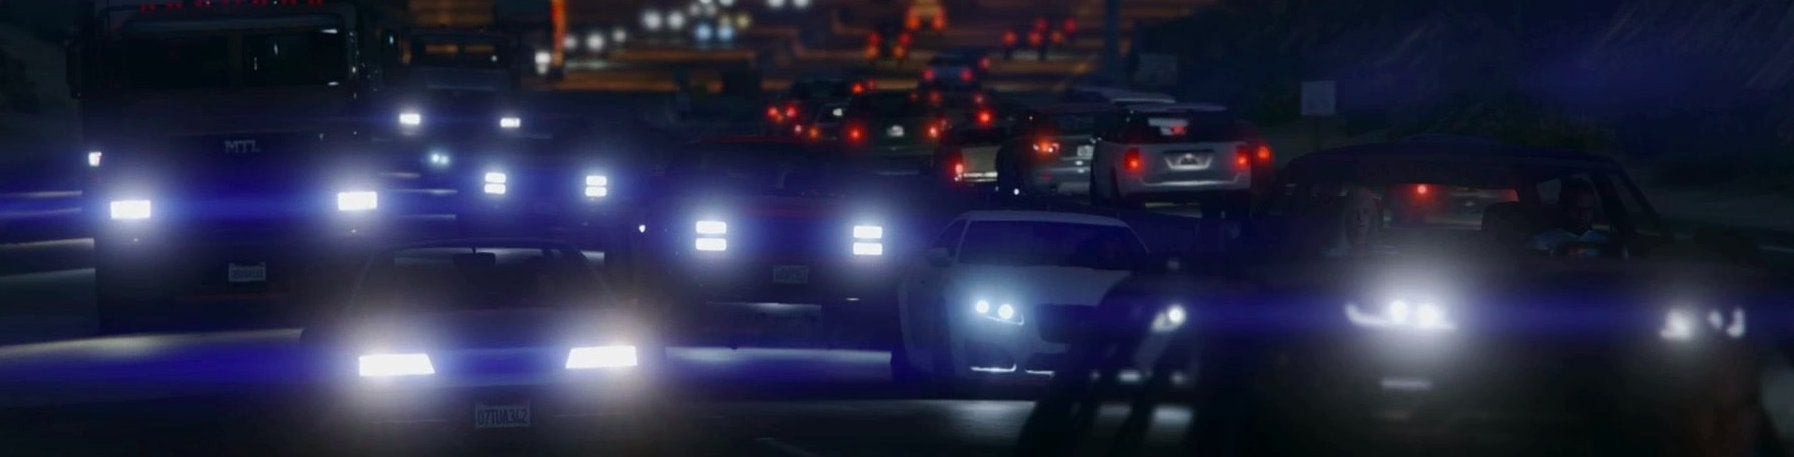 Immagine di Grand Theft Auto 5 su PS4: analisi tecnica